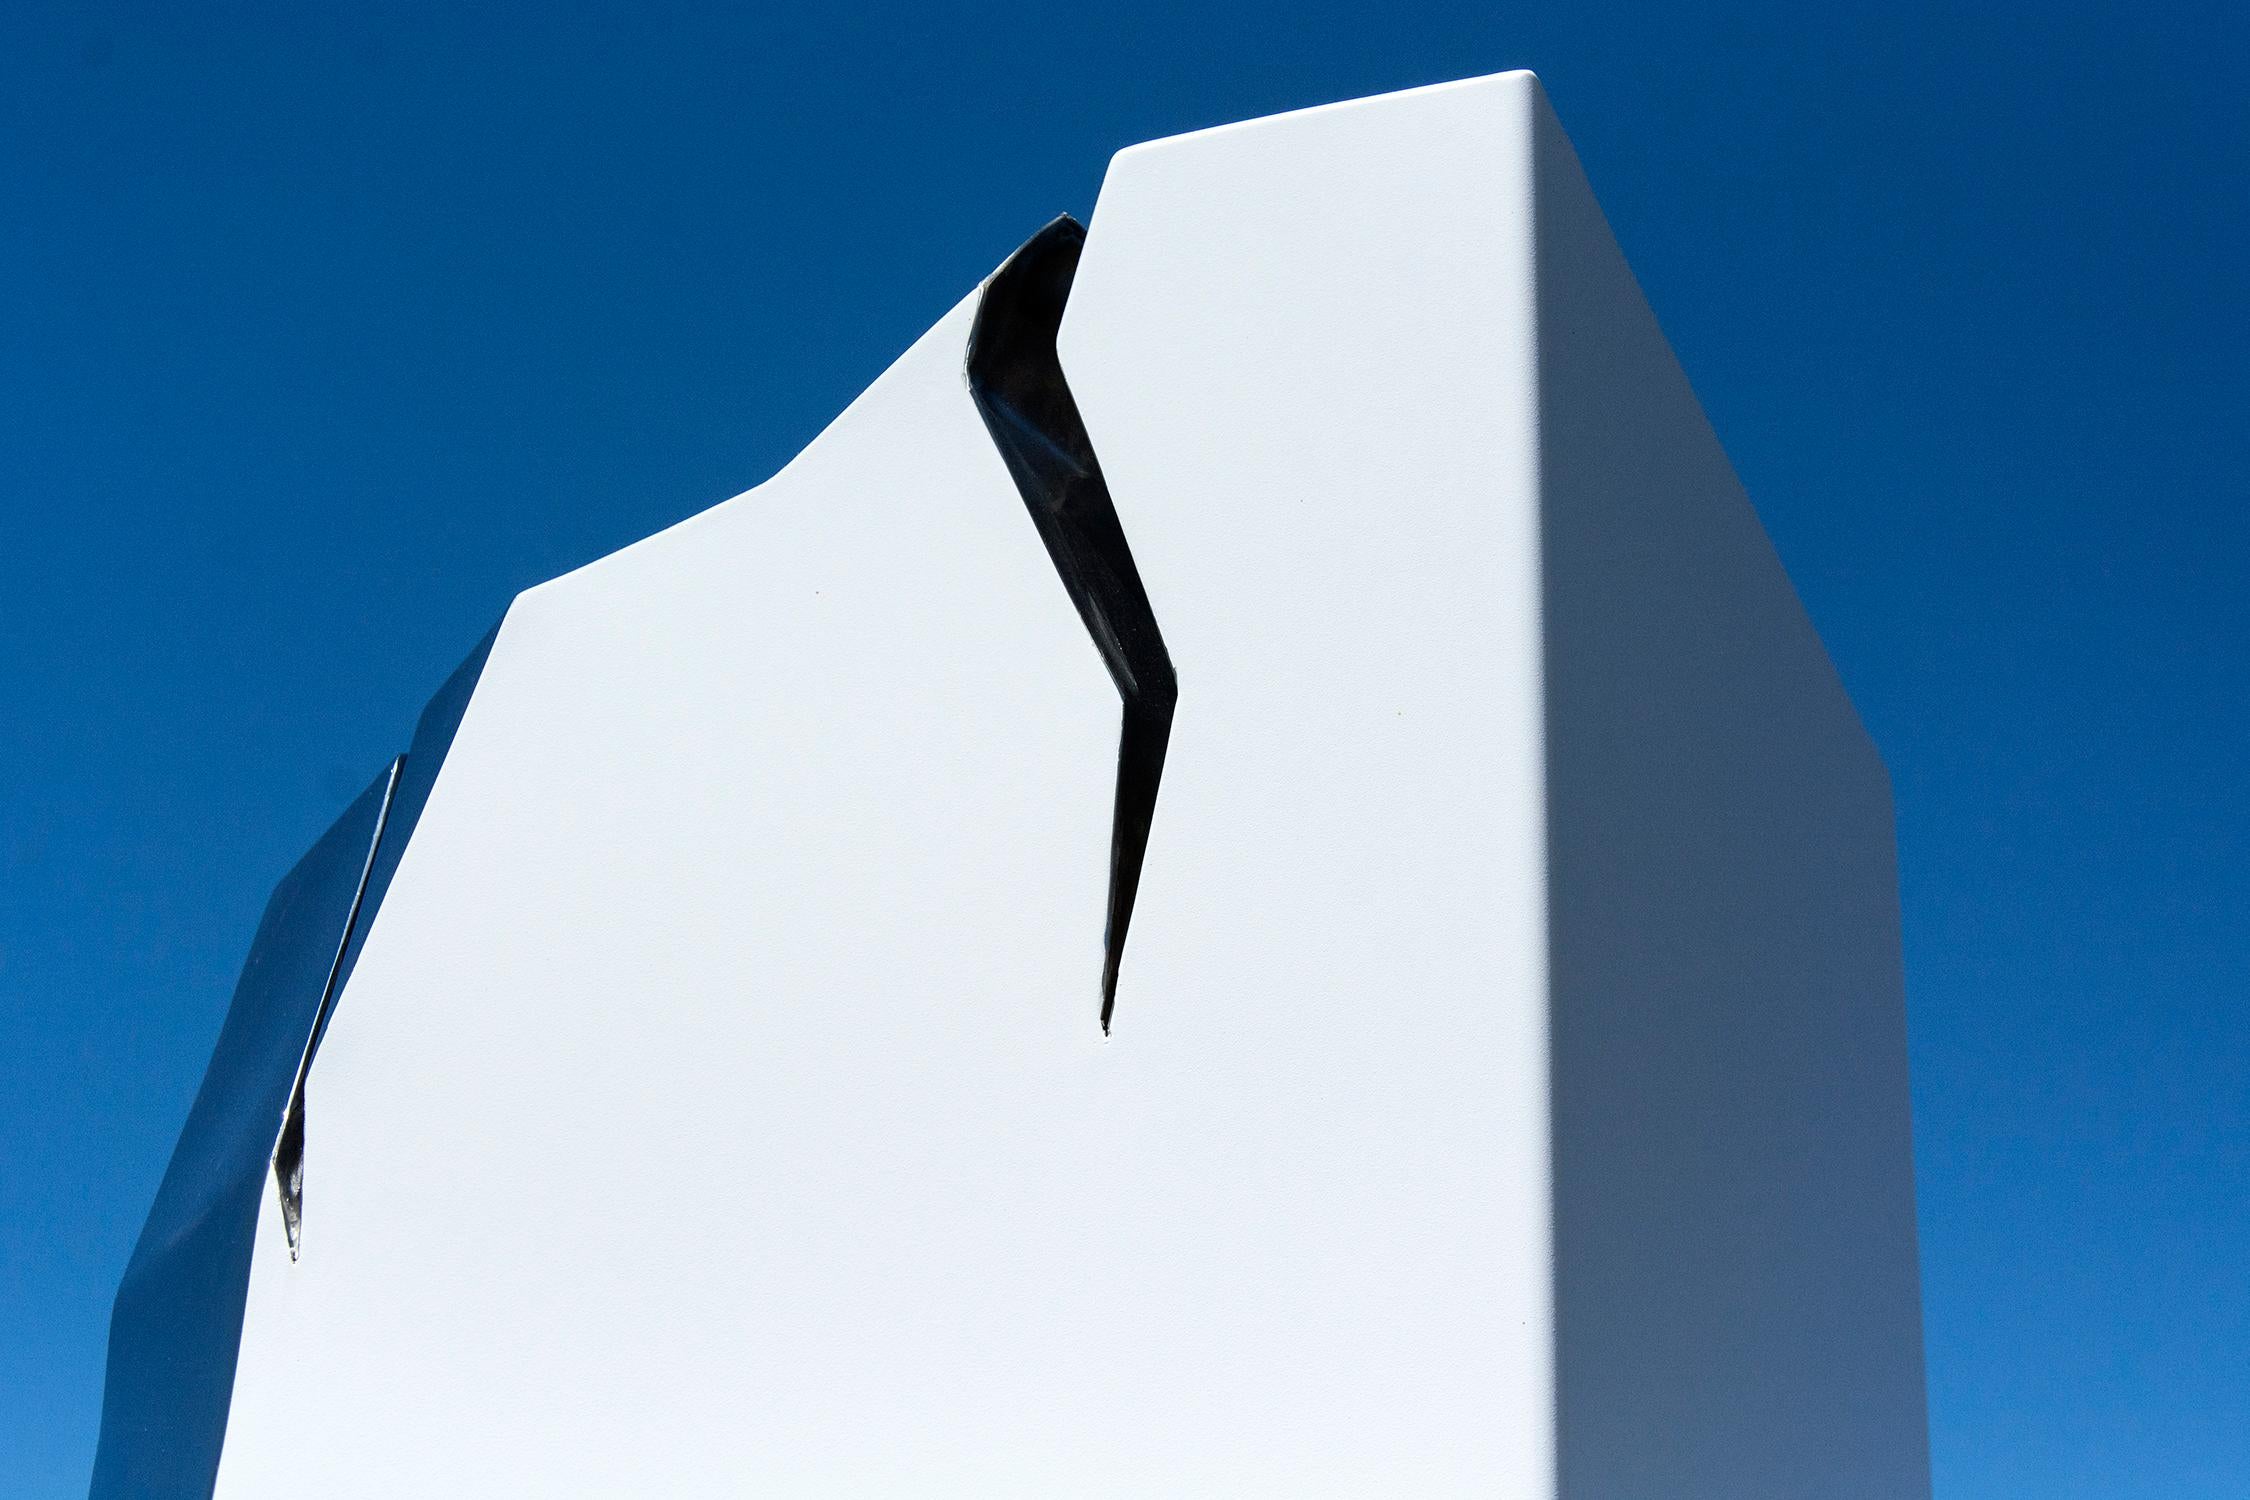 Bei dieser minimalistischen Außenskulptur von Philippe Pallafray ist eine Säule aus Edelstahl weiß beschichtet. Die Skulptur ist mit gezackten, polierten Rissen im Stahl versehen, die im Sonnenlicht glitzern. Der Künstler schrieb dem reflektierten